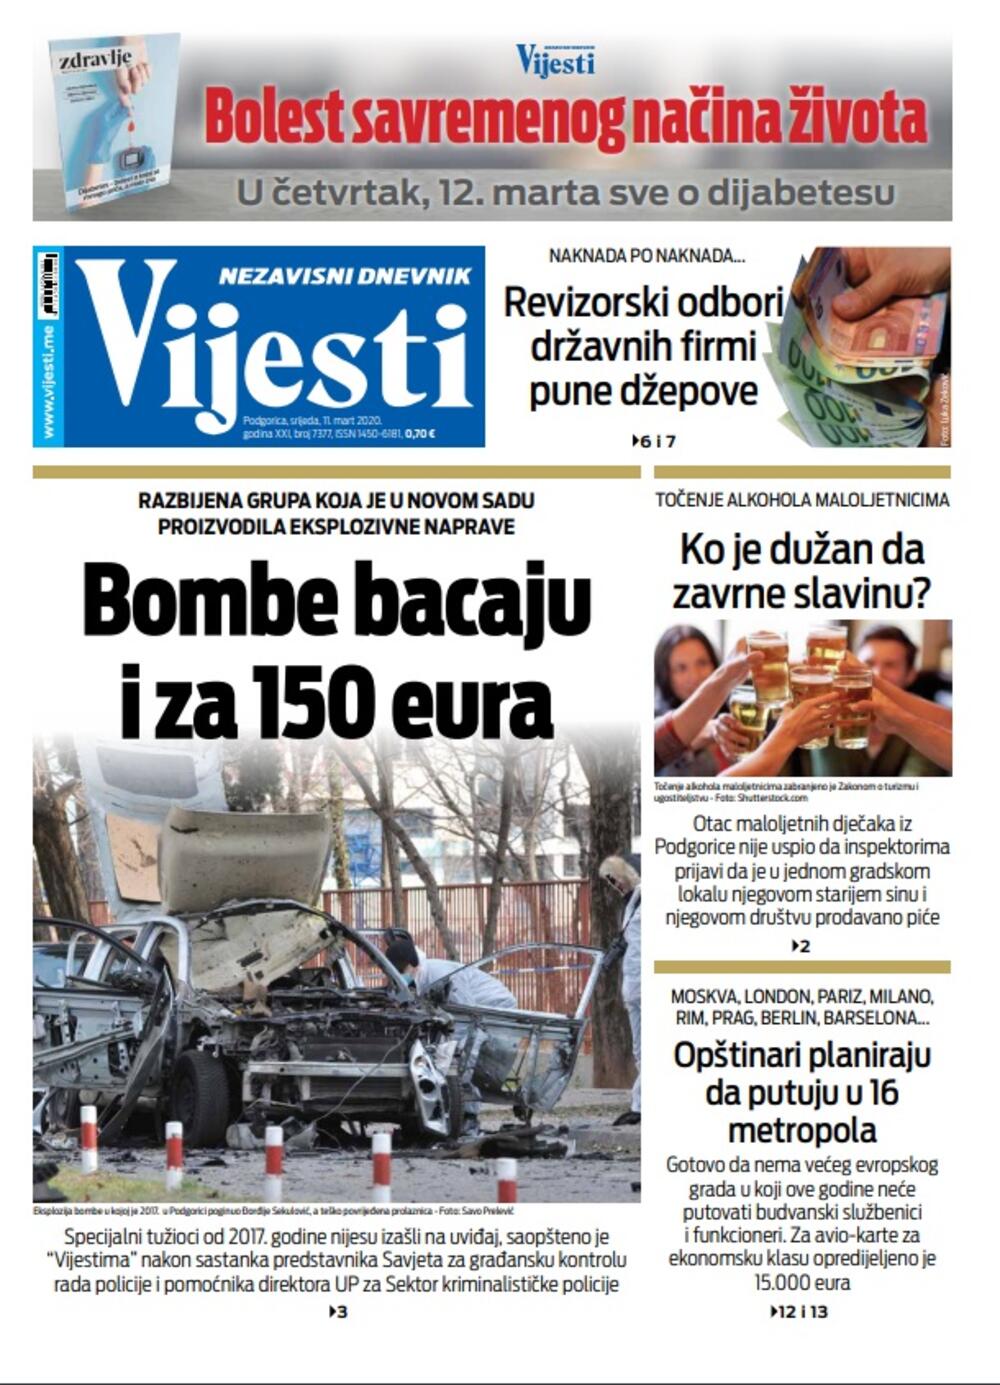 Naslovna strana "Vijesti" za 11. 3. 2020., Foto: Vijesti